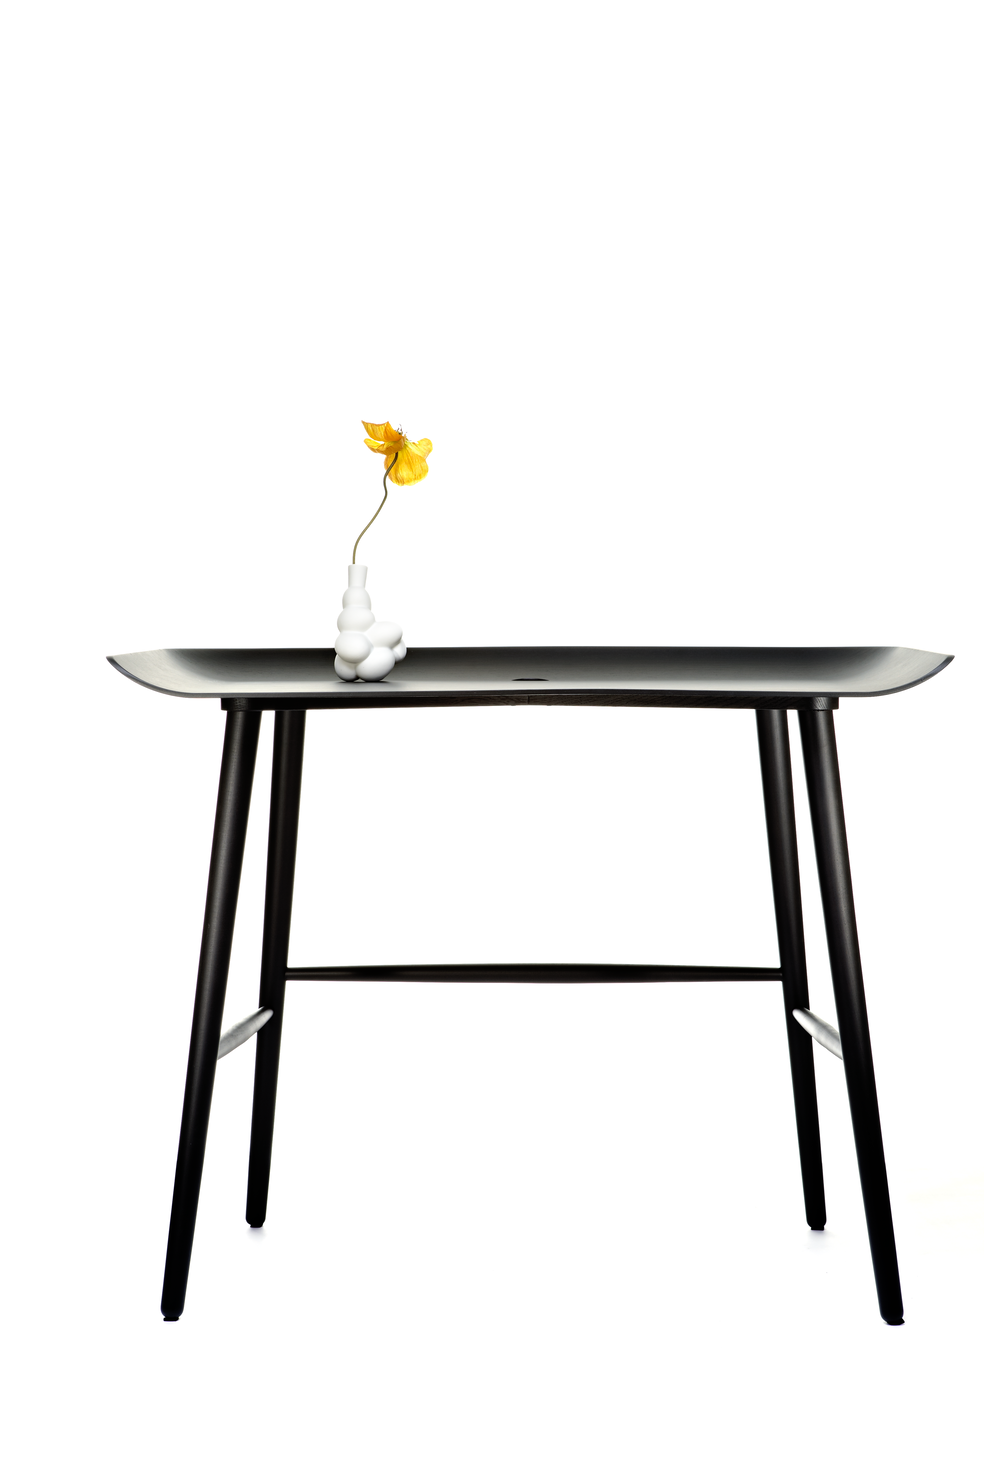 Woood Desk with Egg Vase